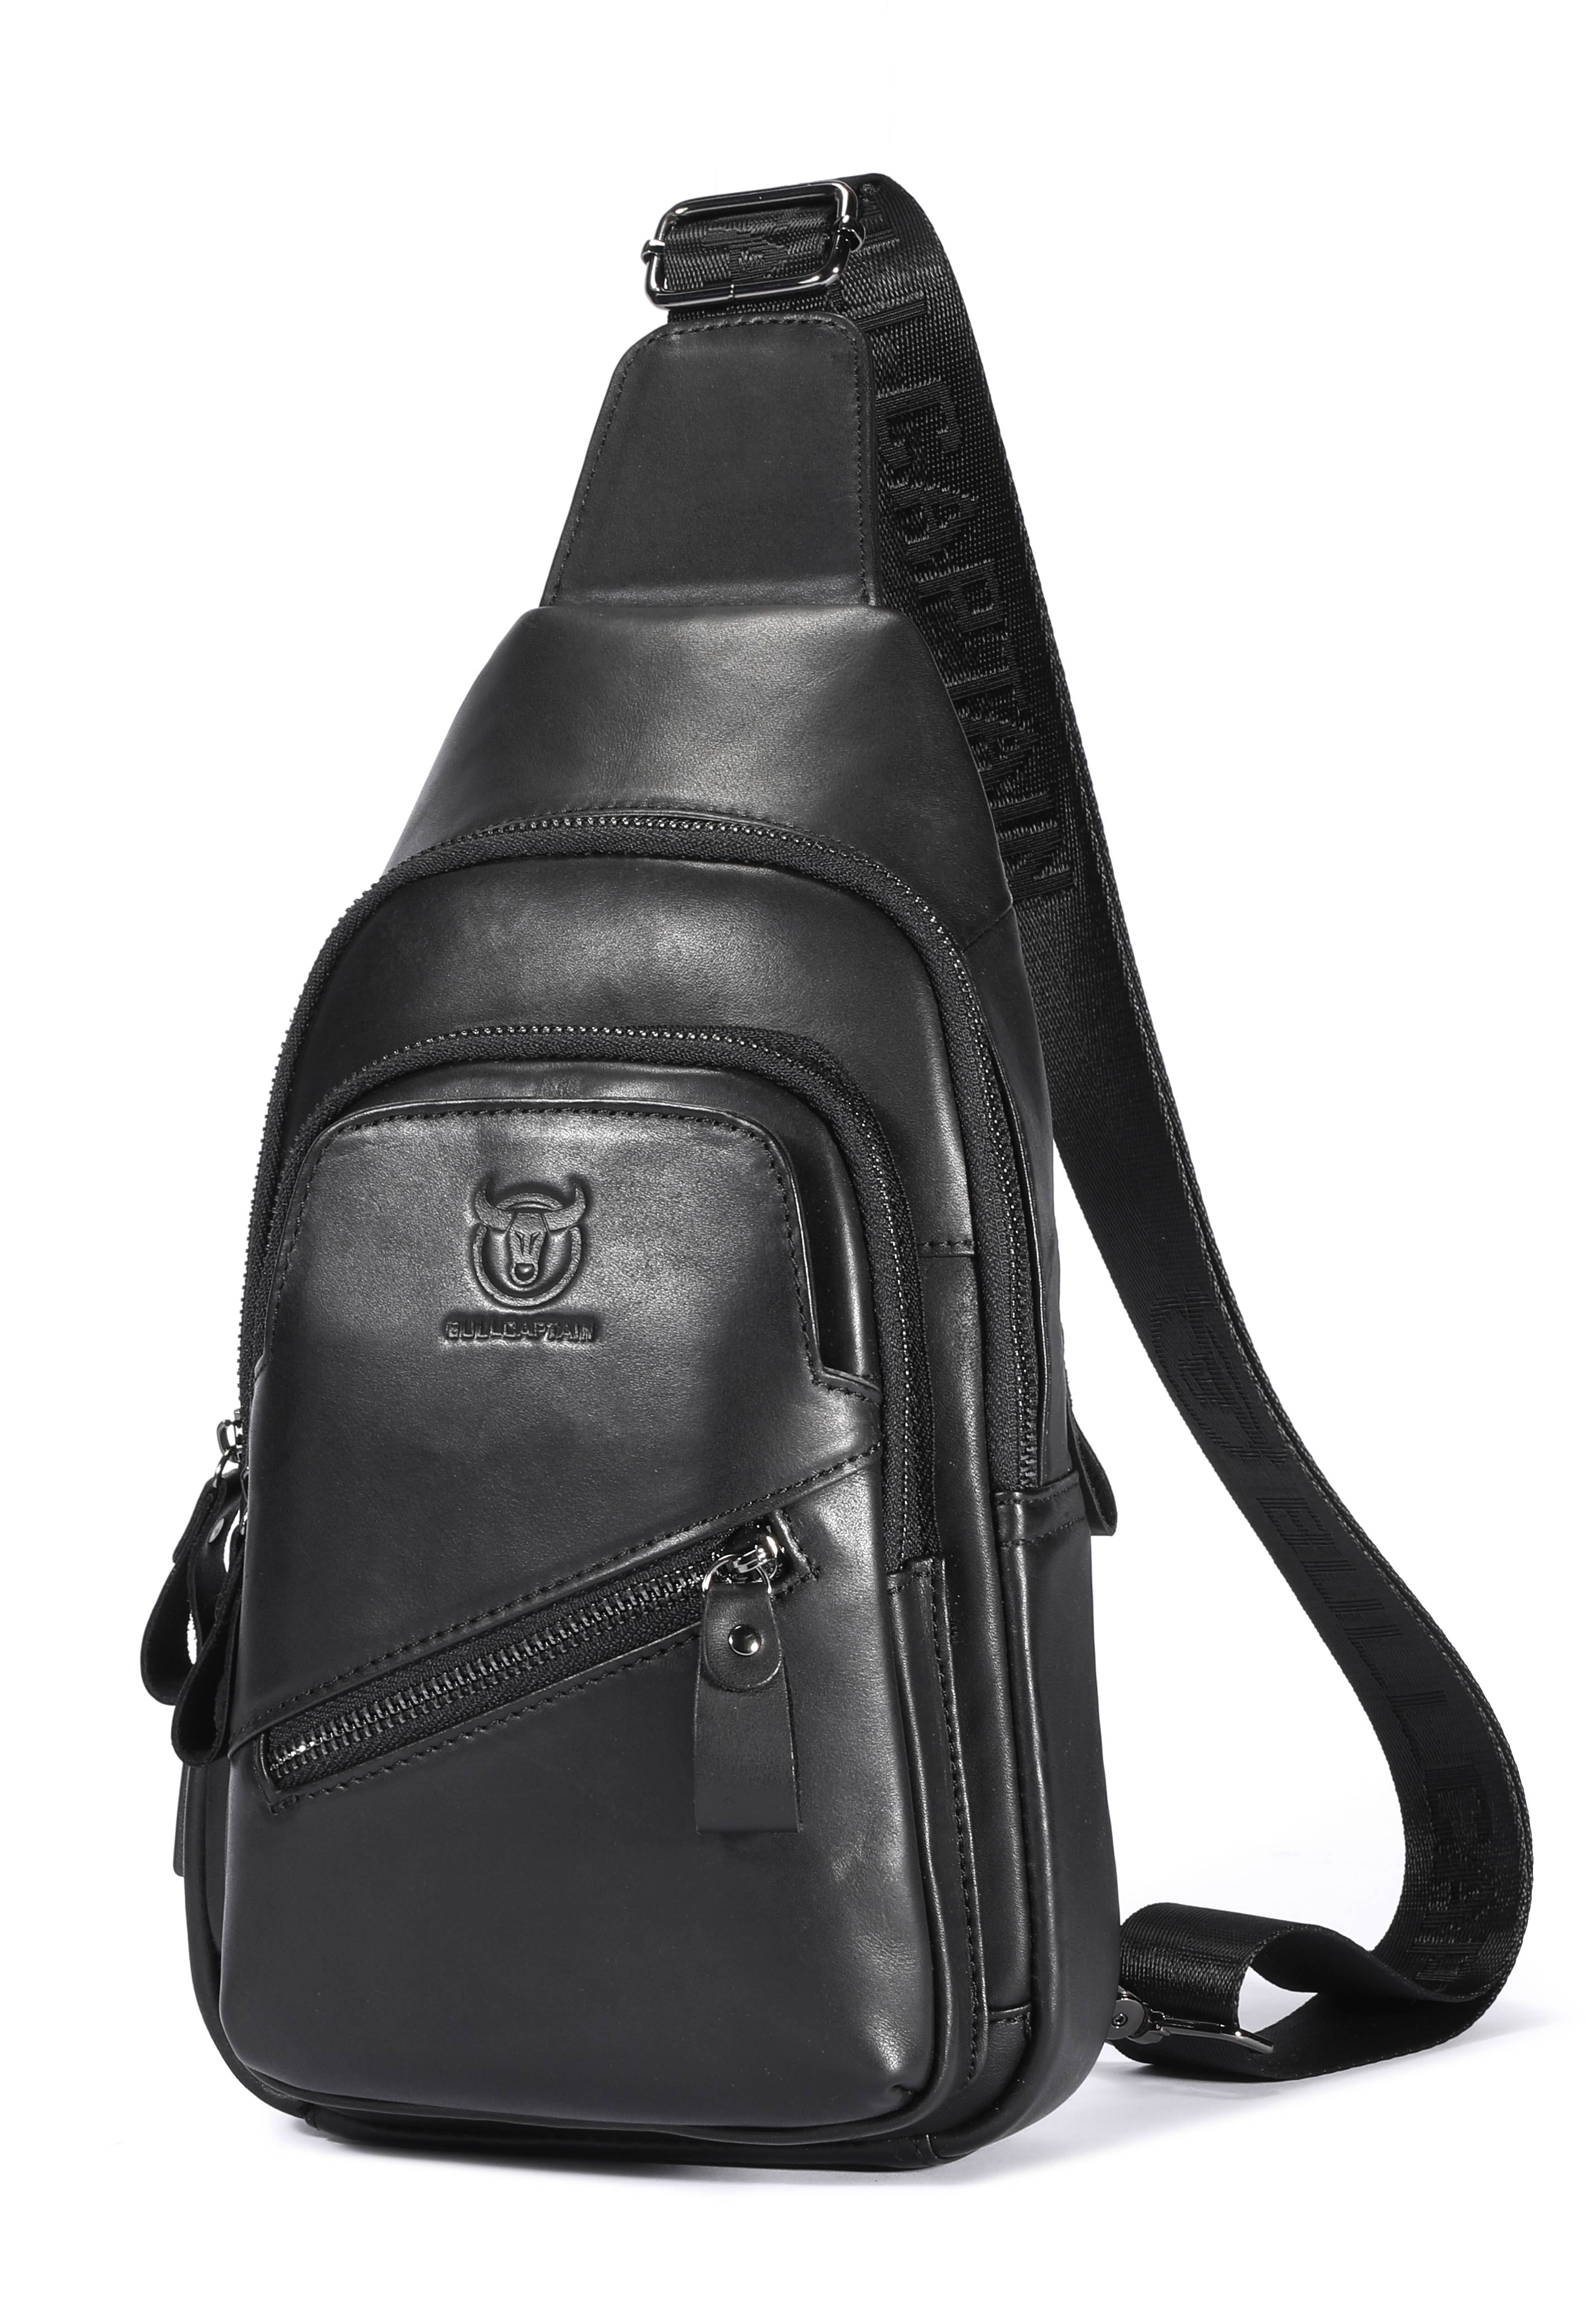 Bullcaptain Leather Crossbody Bag for Men Chest Sling Bag Genuine Leather Sachel Bags - 127